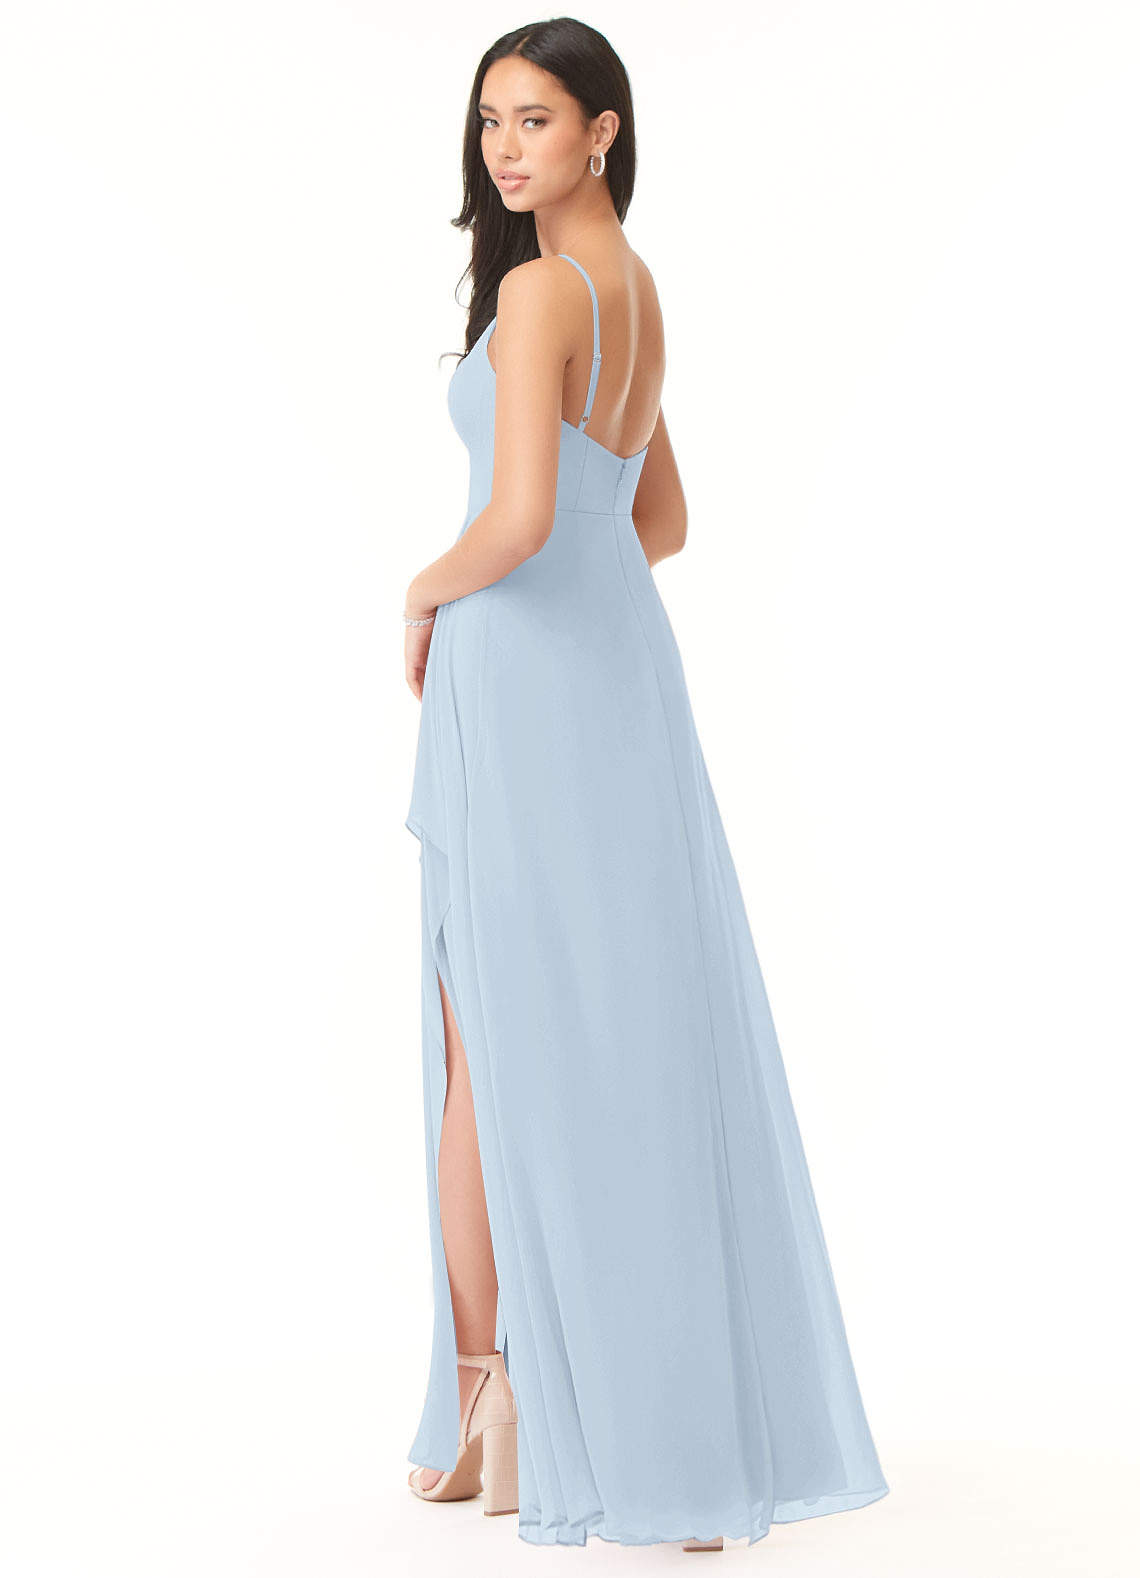 Azazie Collette Bridesmaid Dresses A-Line Chiffon Floor-Length Dress image1